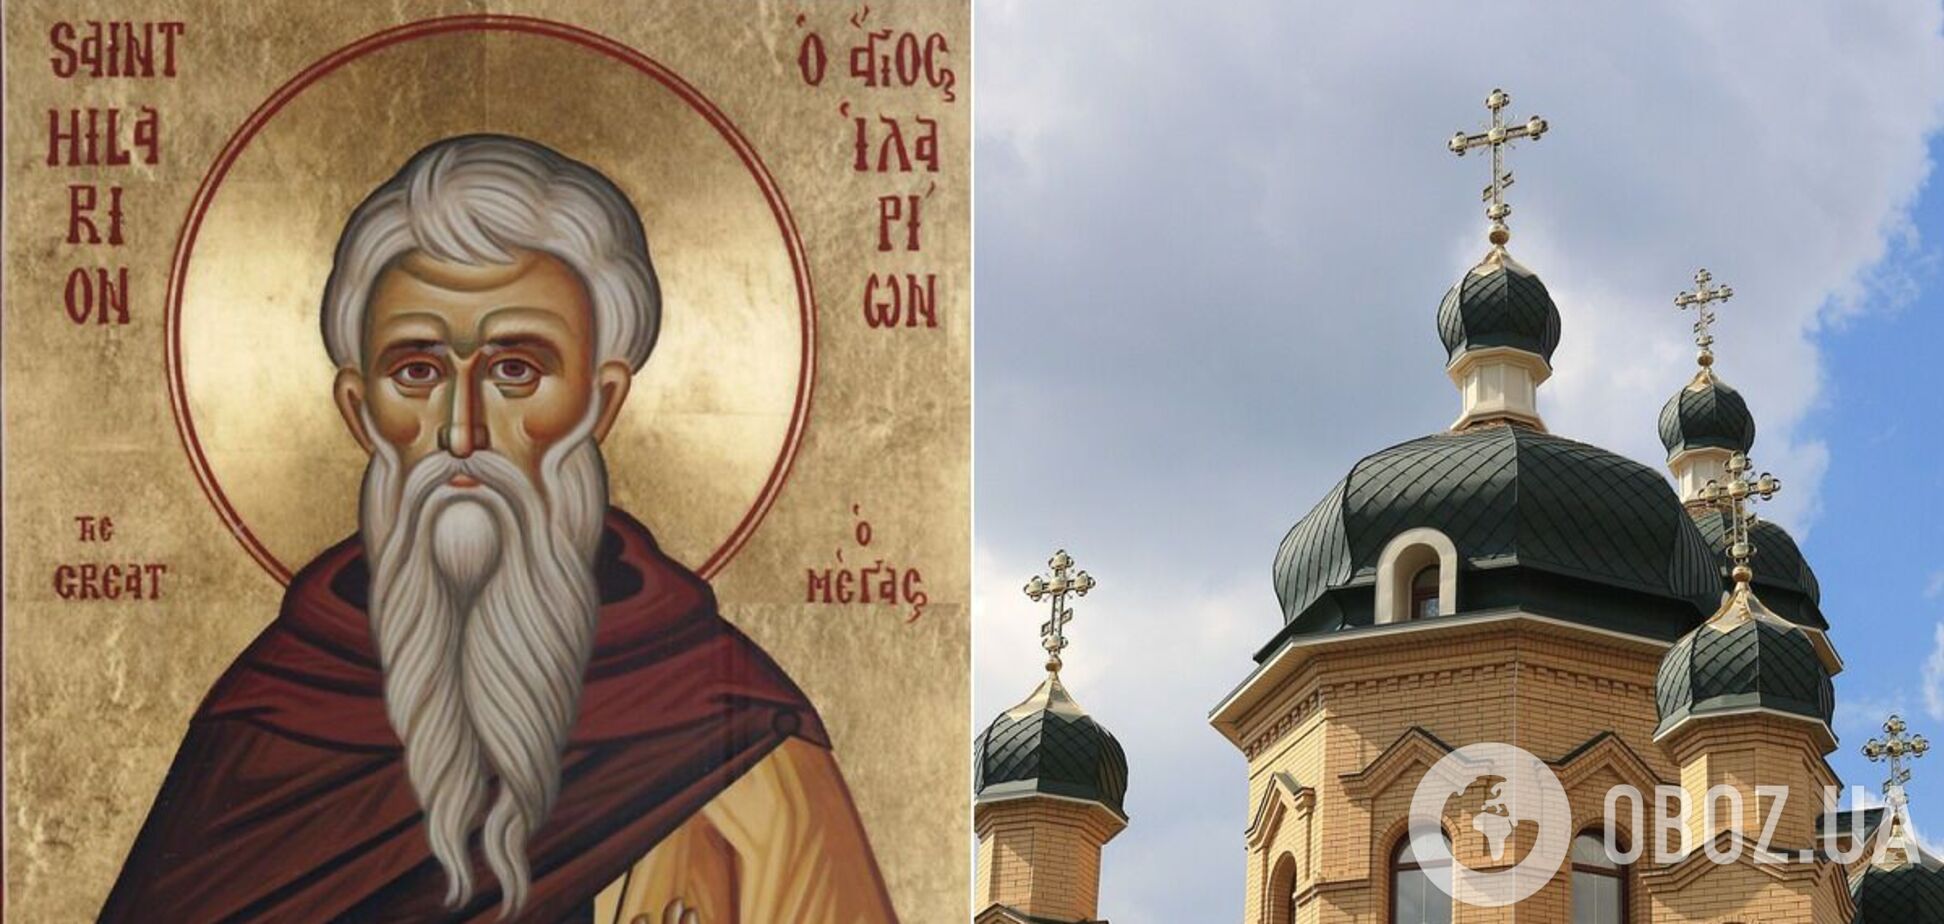 Іларіон Великий заснував декілька монастирів і був першим проповідником чернецтва в Палестині